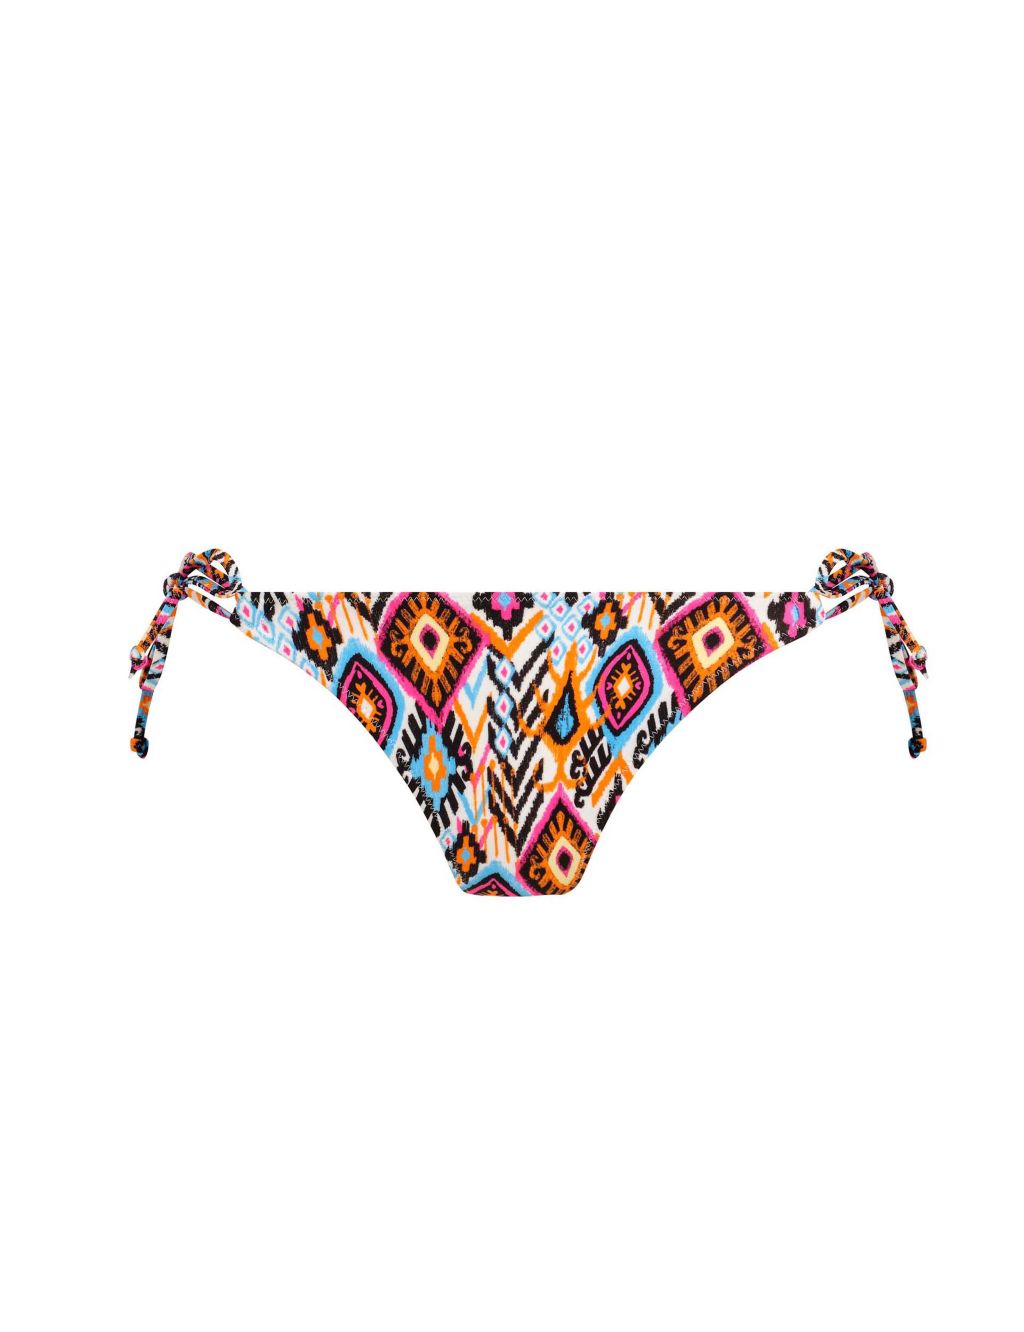 Viva La Fiesta Printed Bikini Bottoms image 2